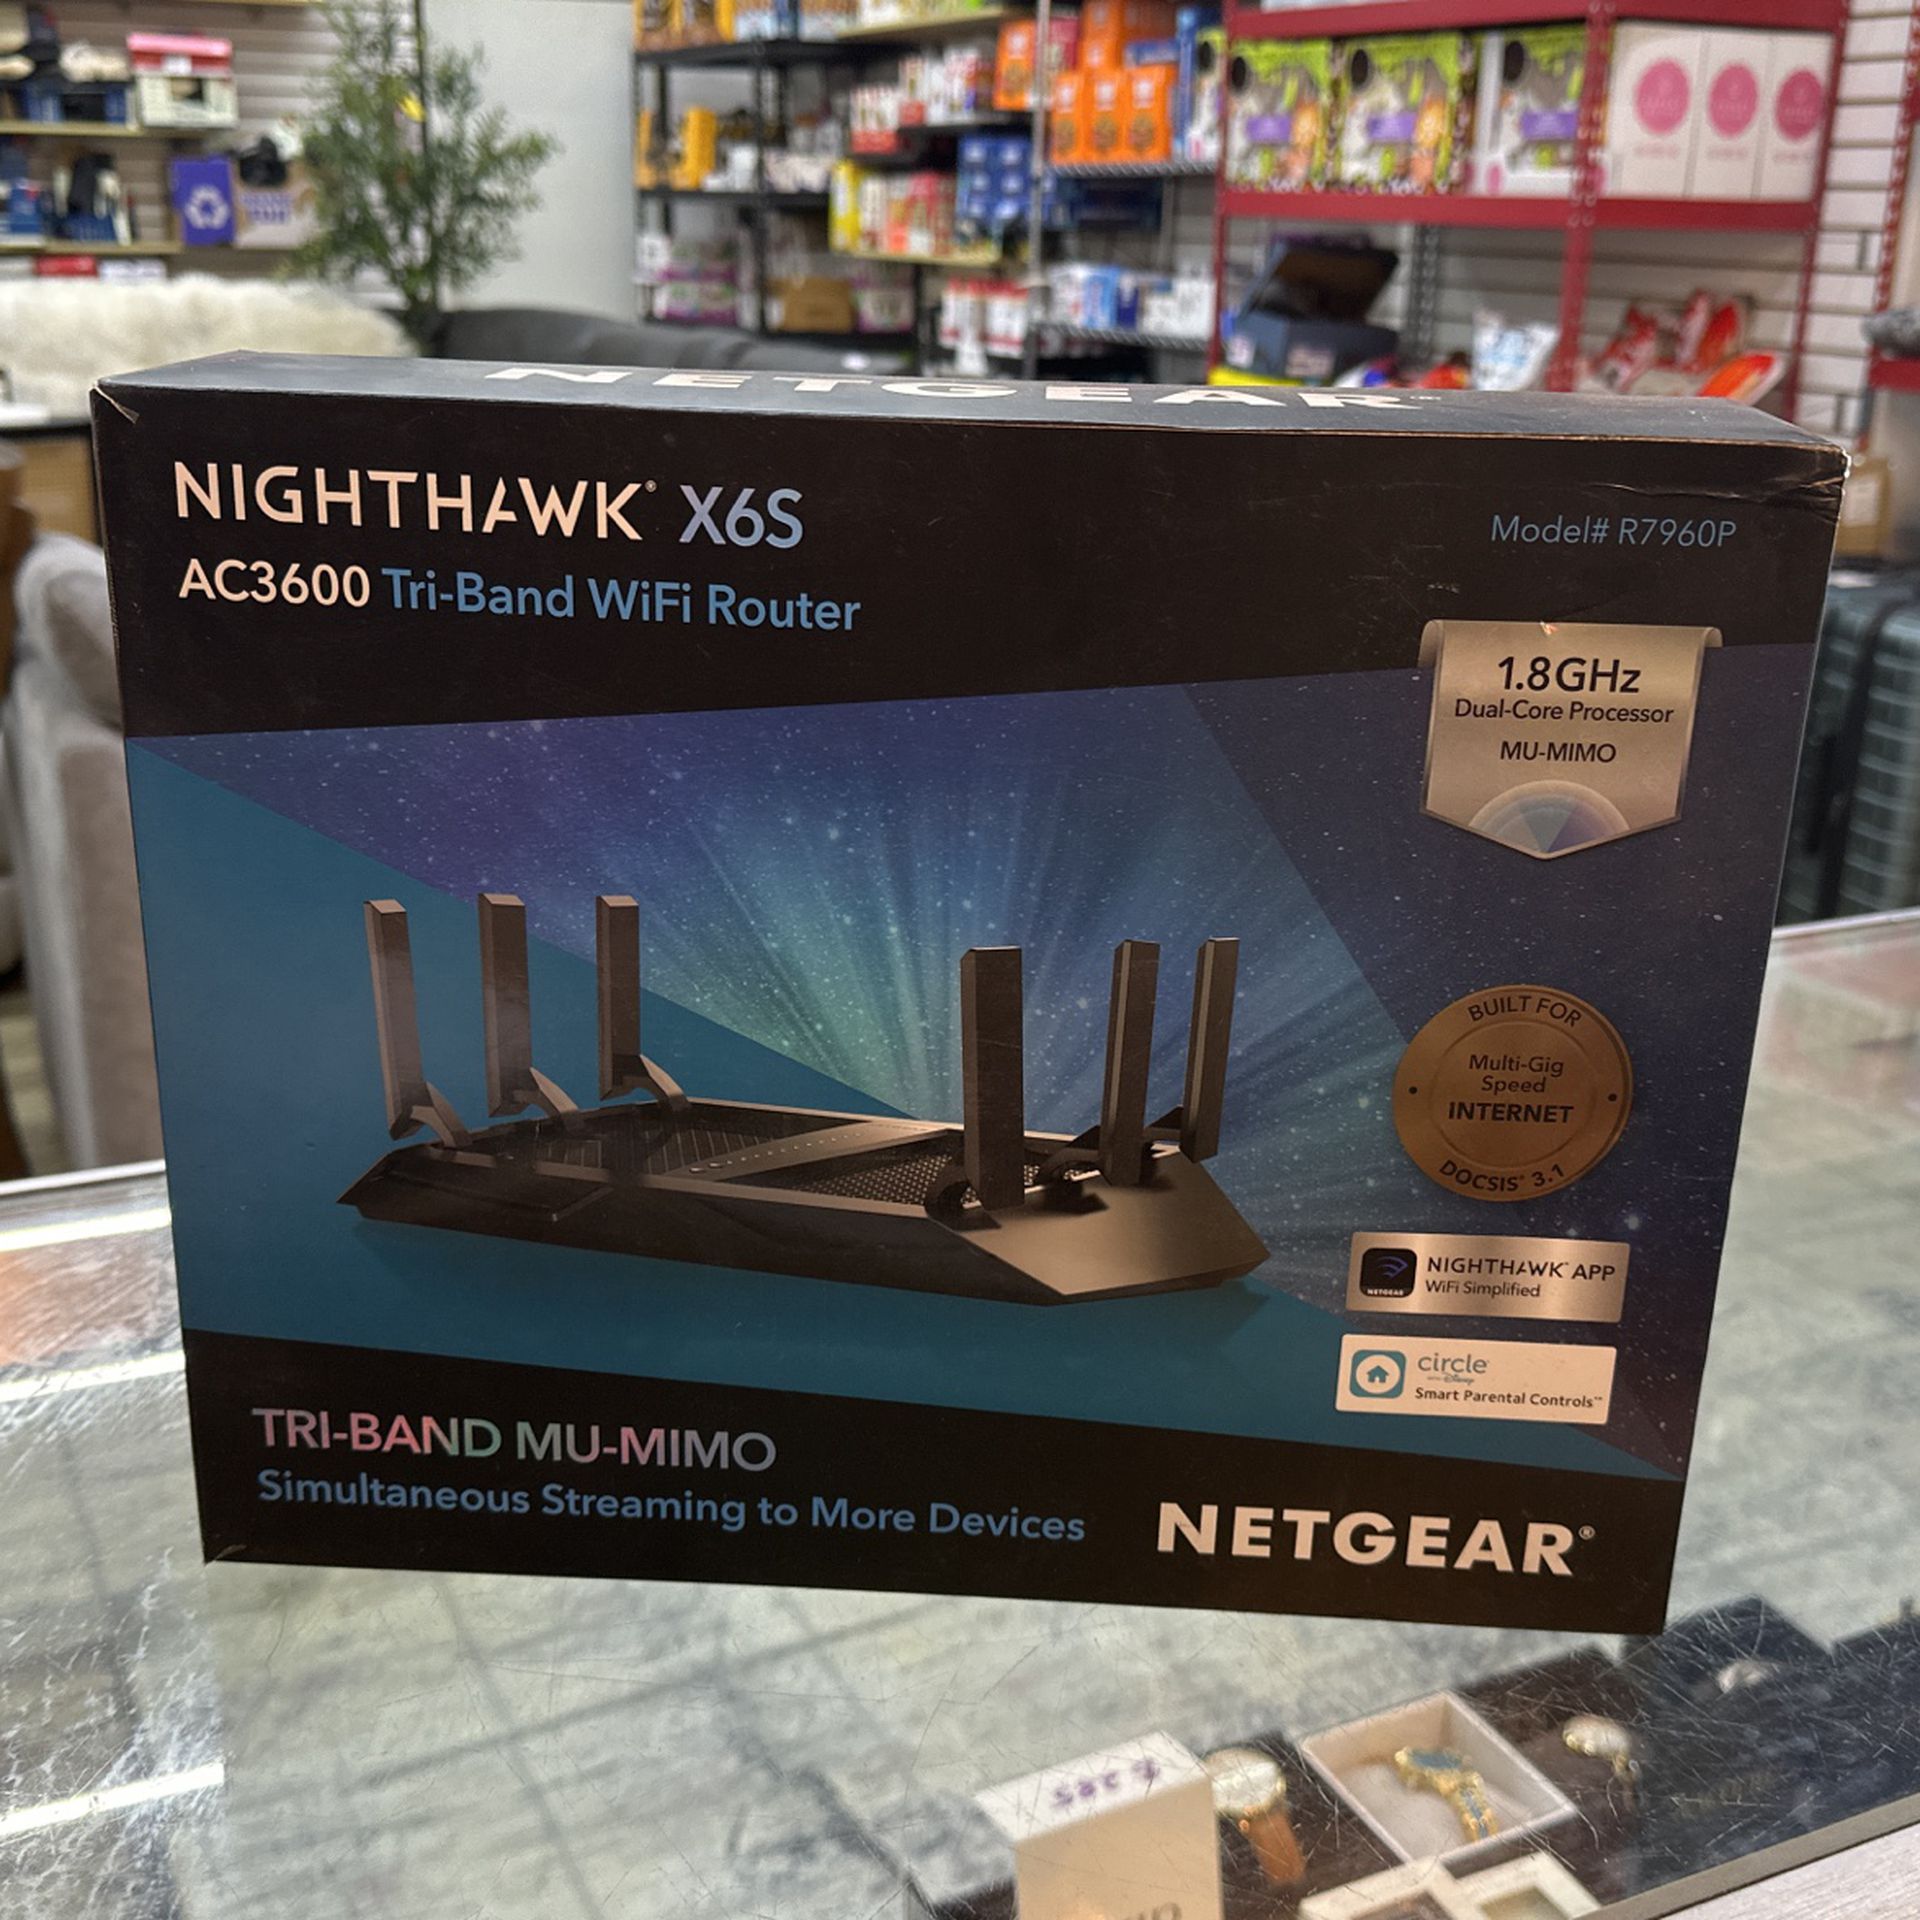 Nighthawk X65 AC3600 Tri-Band WiFi Router 